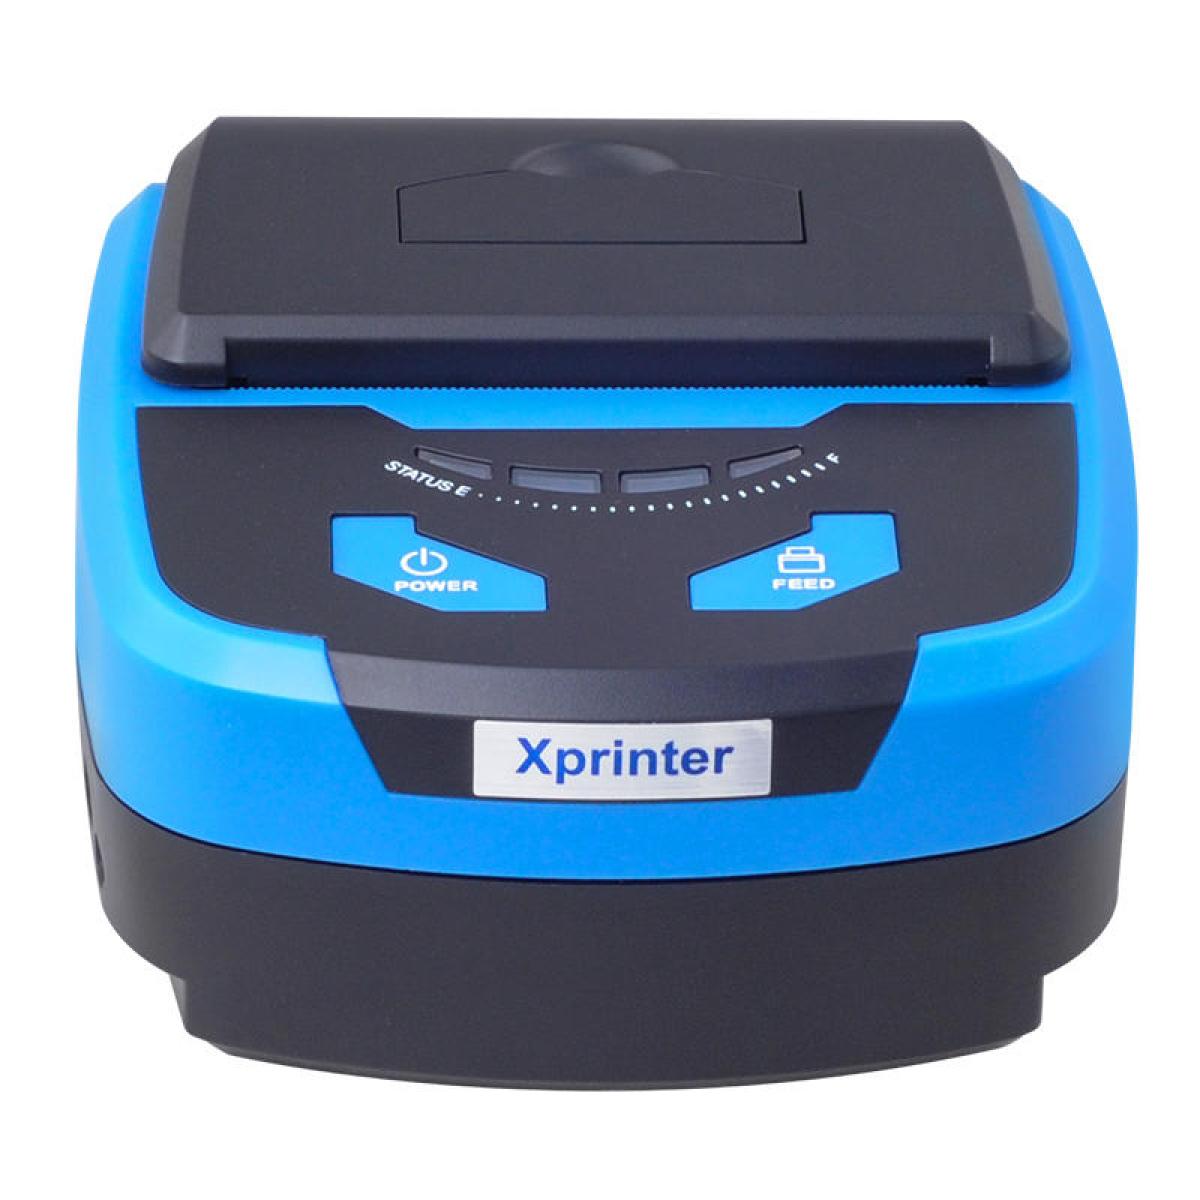 Xprinter XP-P810 Thermal Mobile Receipt Printer